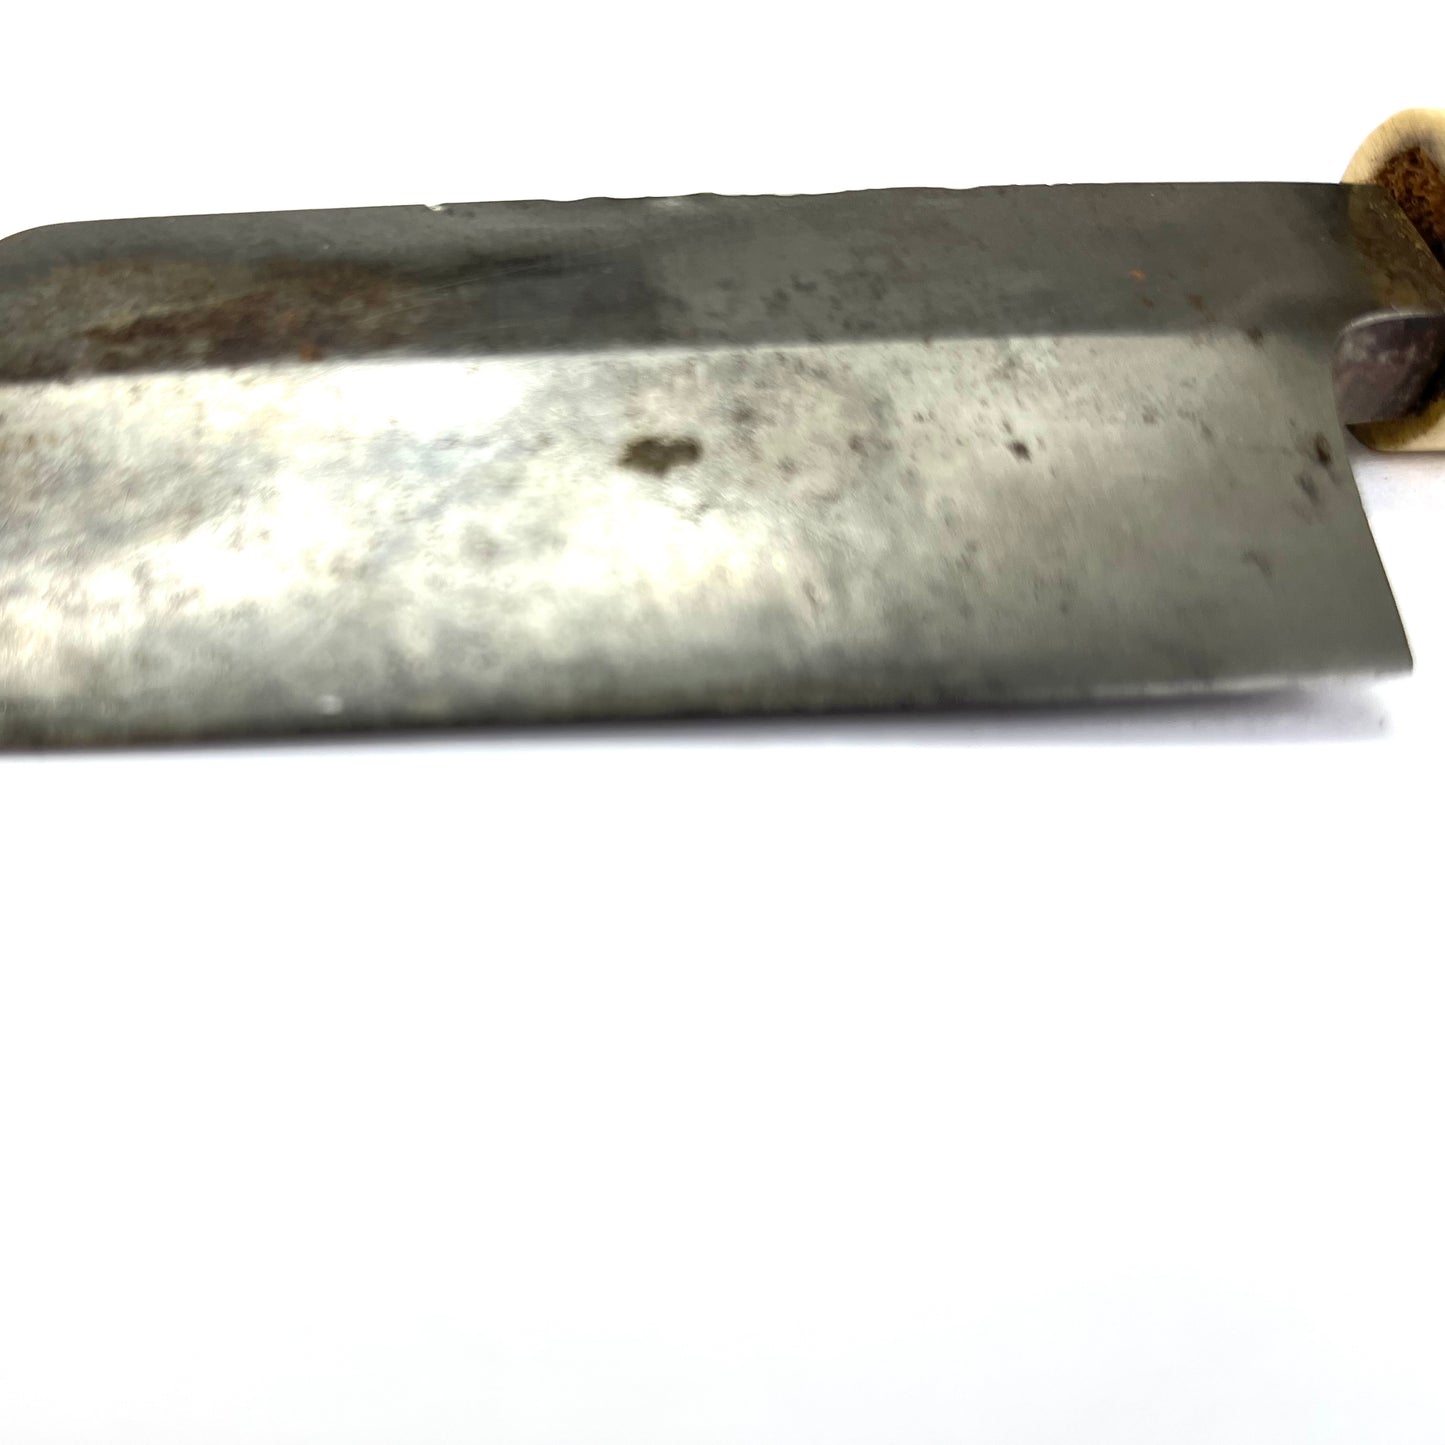 Vintage Japanese Small Hatchet bamboo splitting knife 4.5”